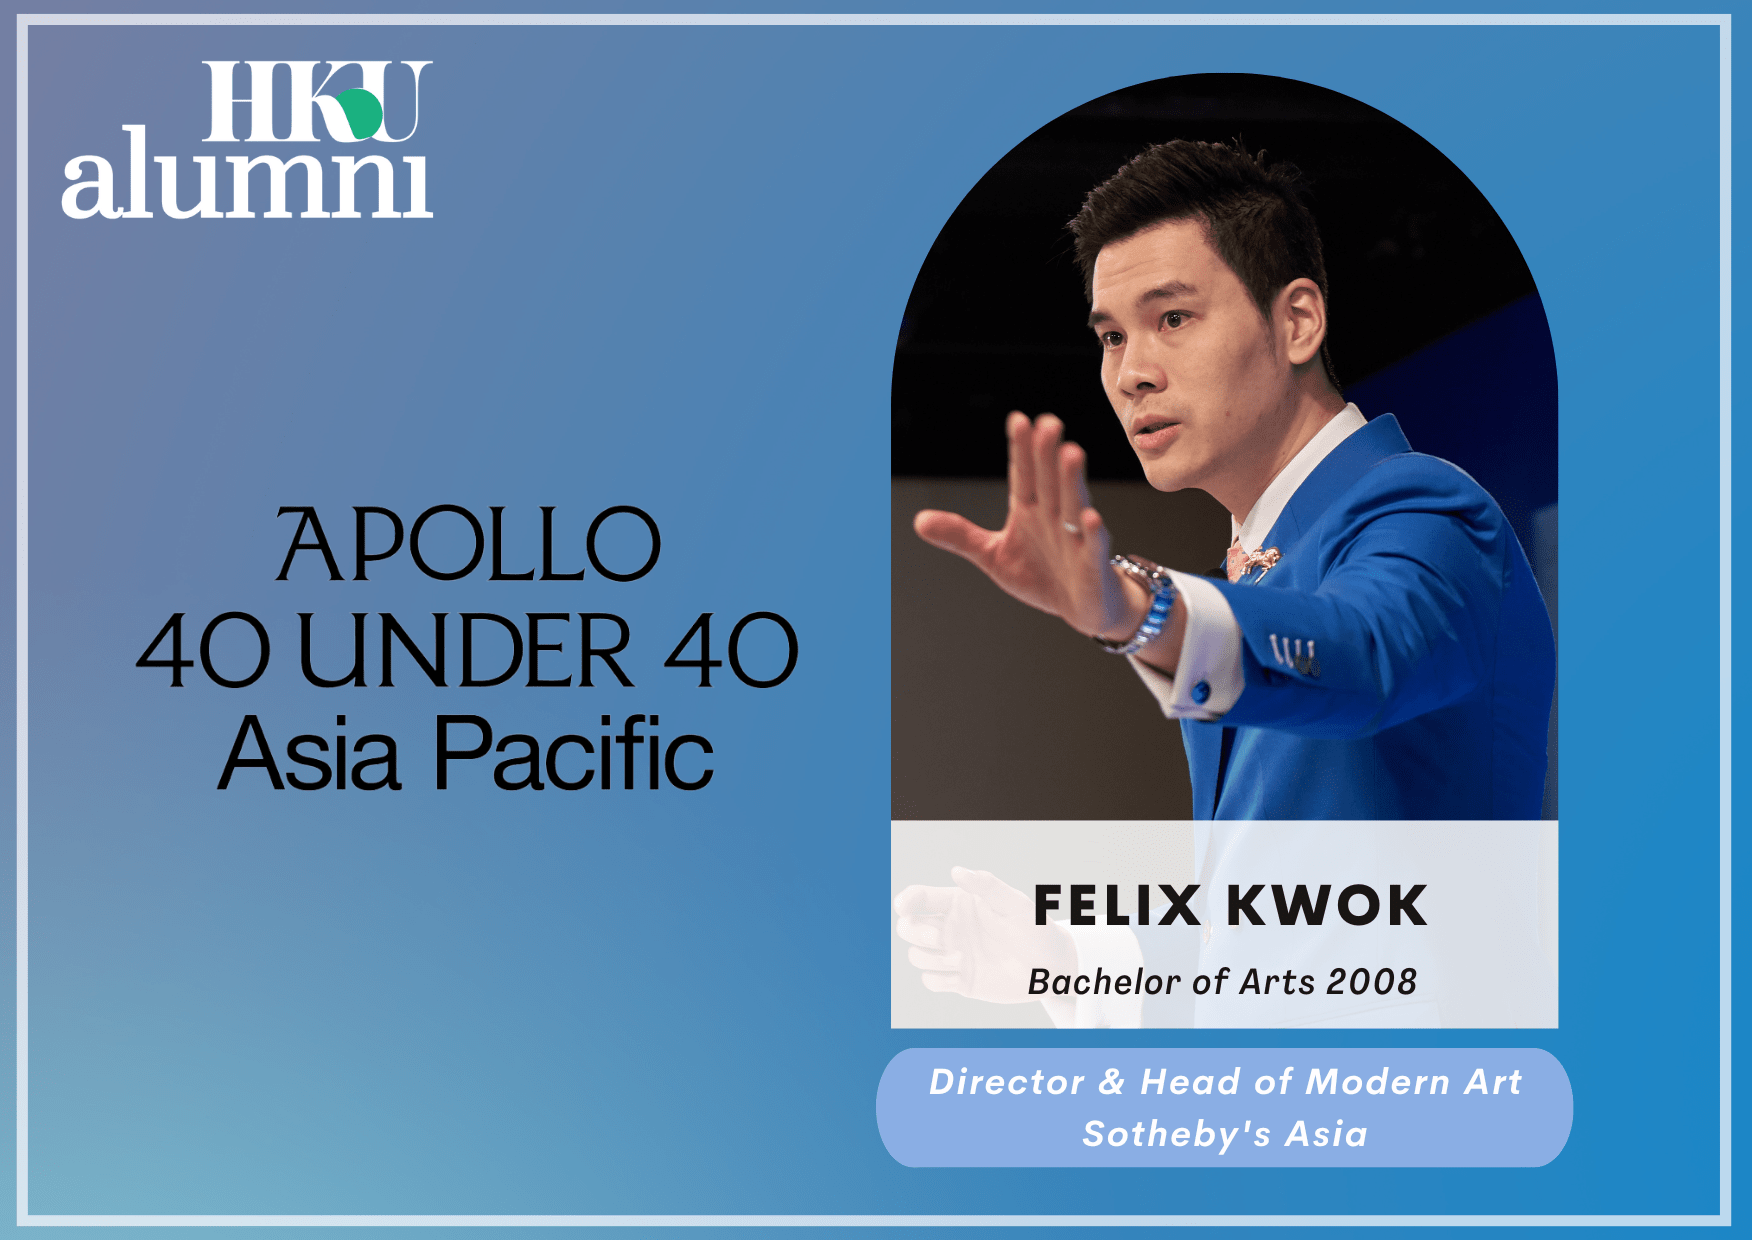 Felix Kwok (BA 2008) | Apollo 40 Under 40 Asia Pacific 2022